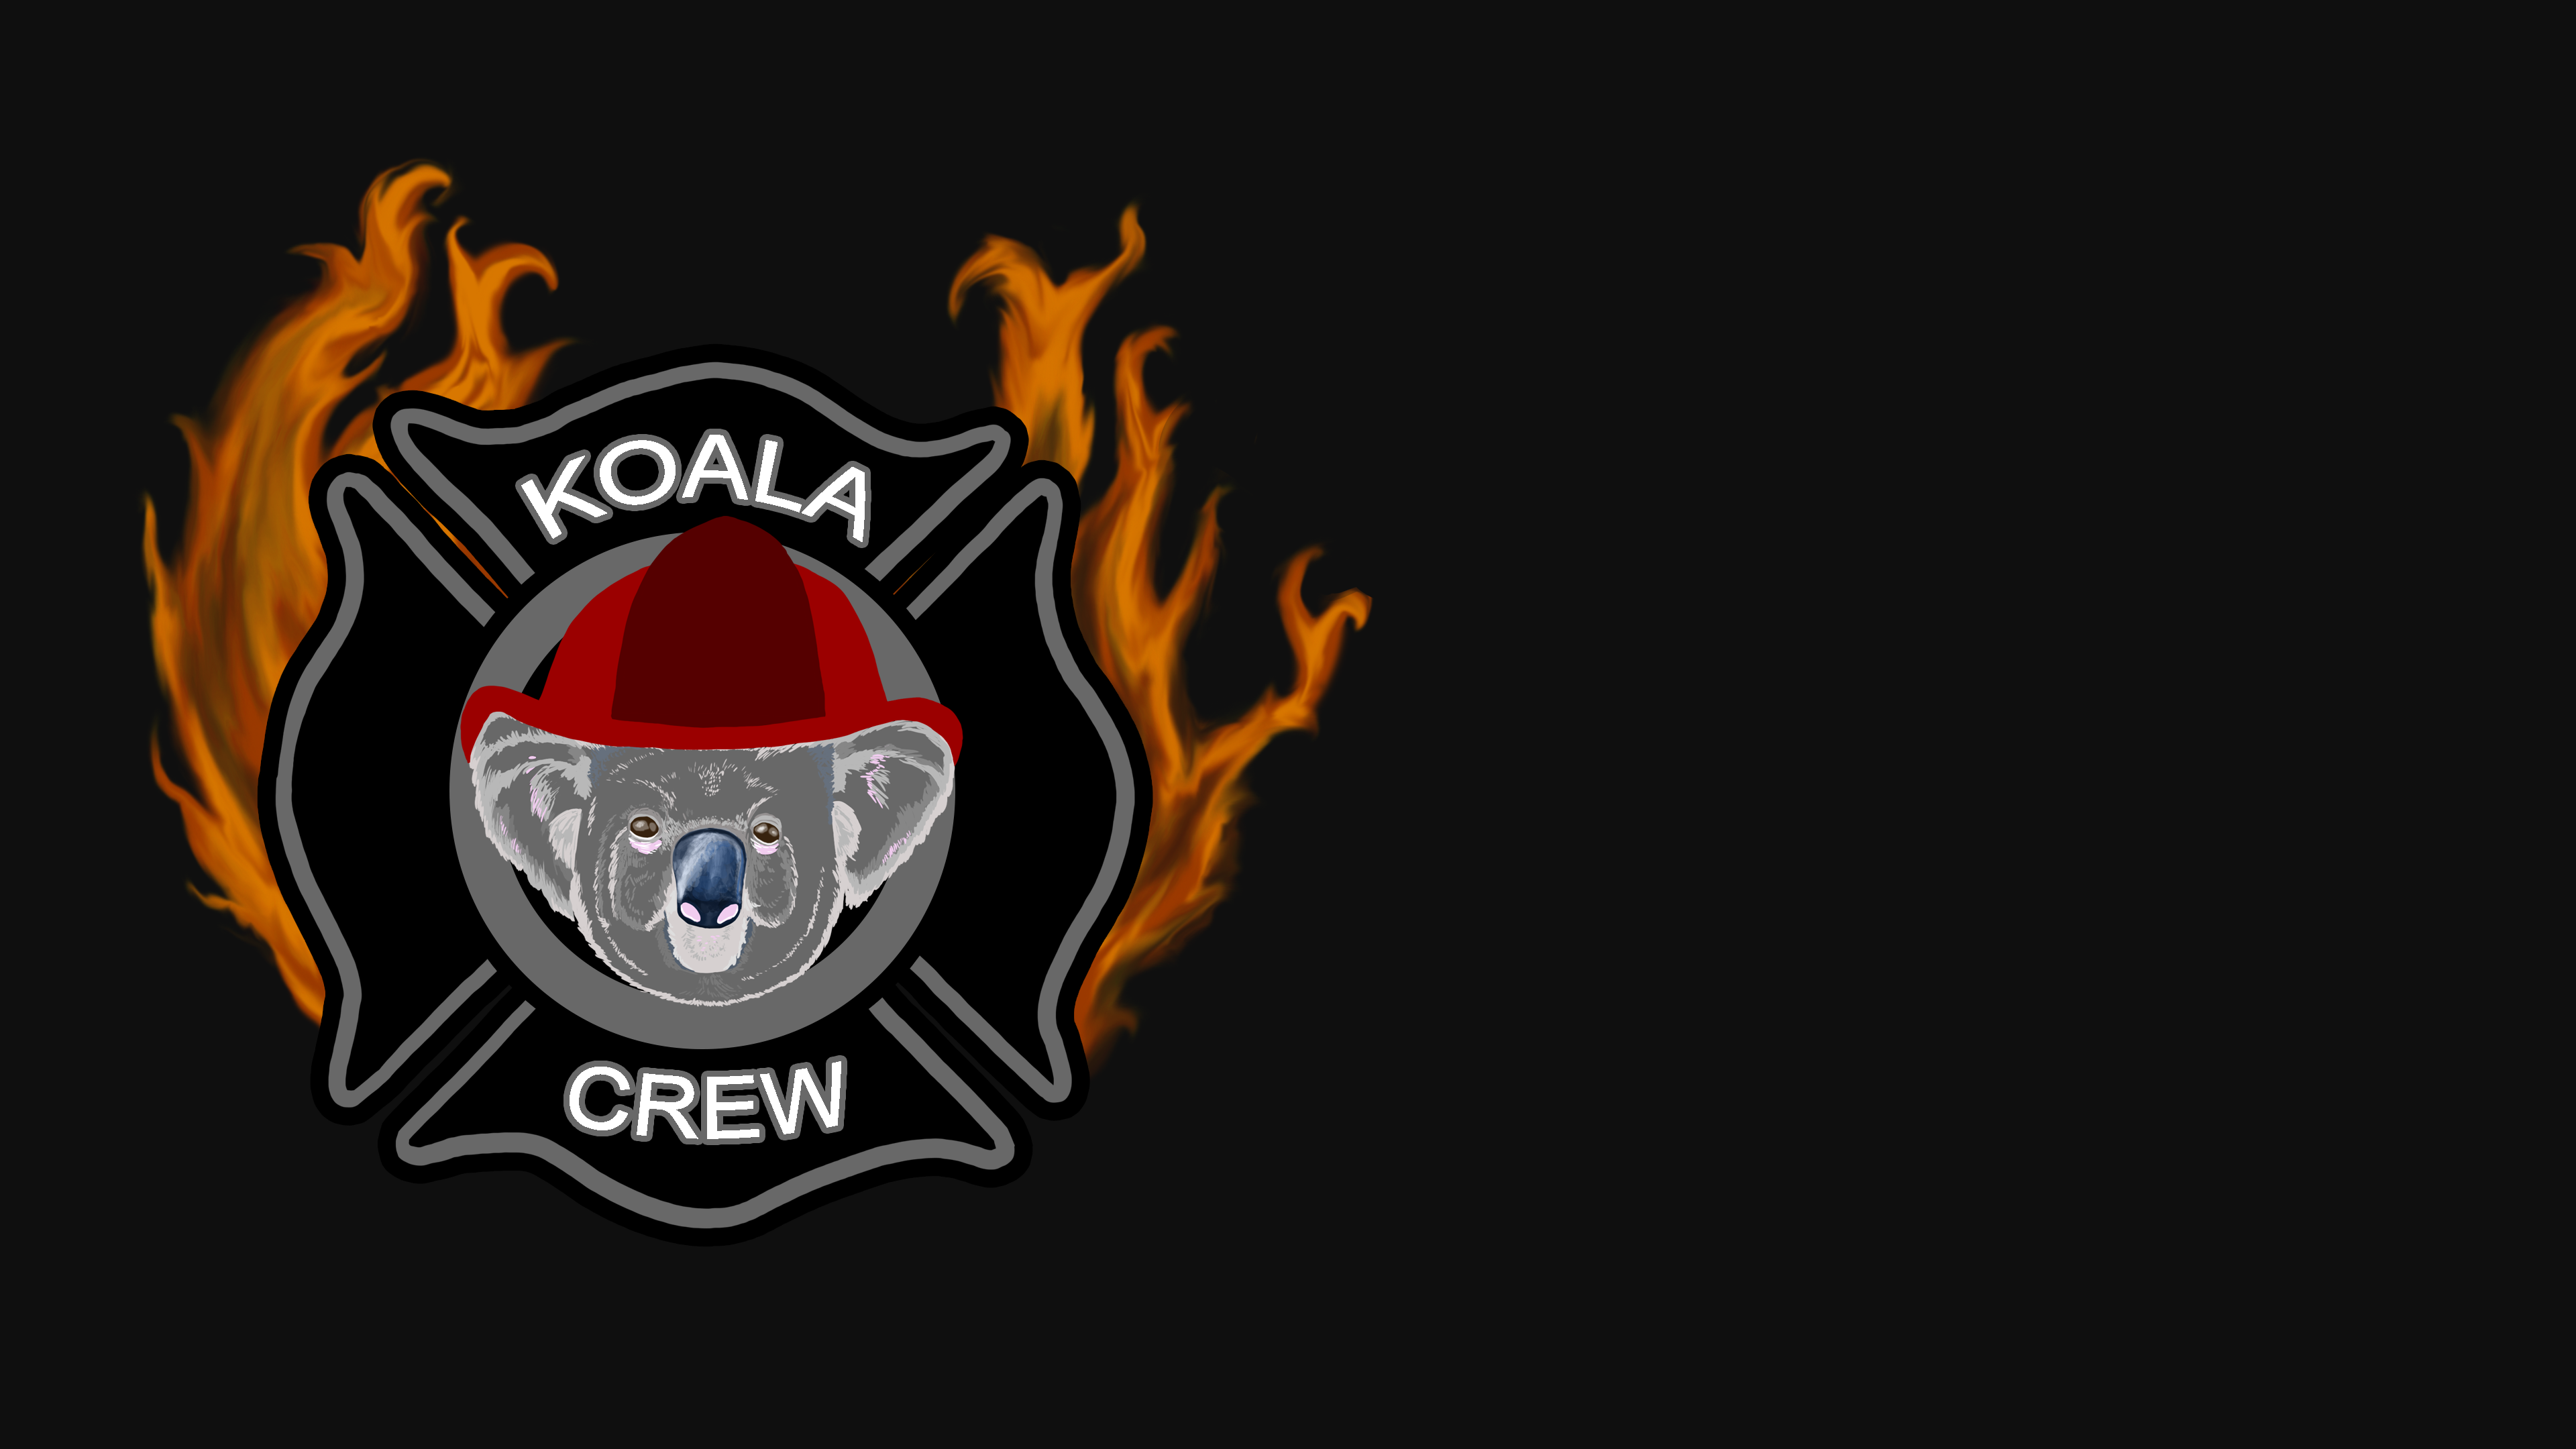 Koala Crew